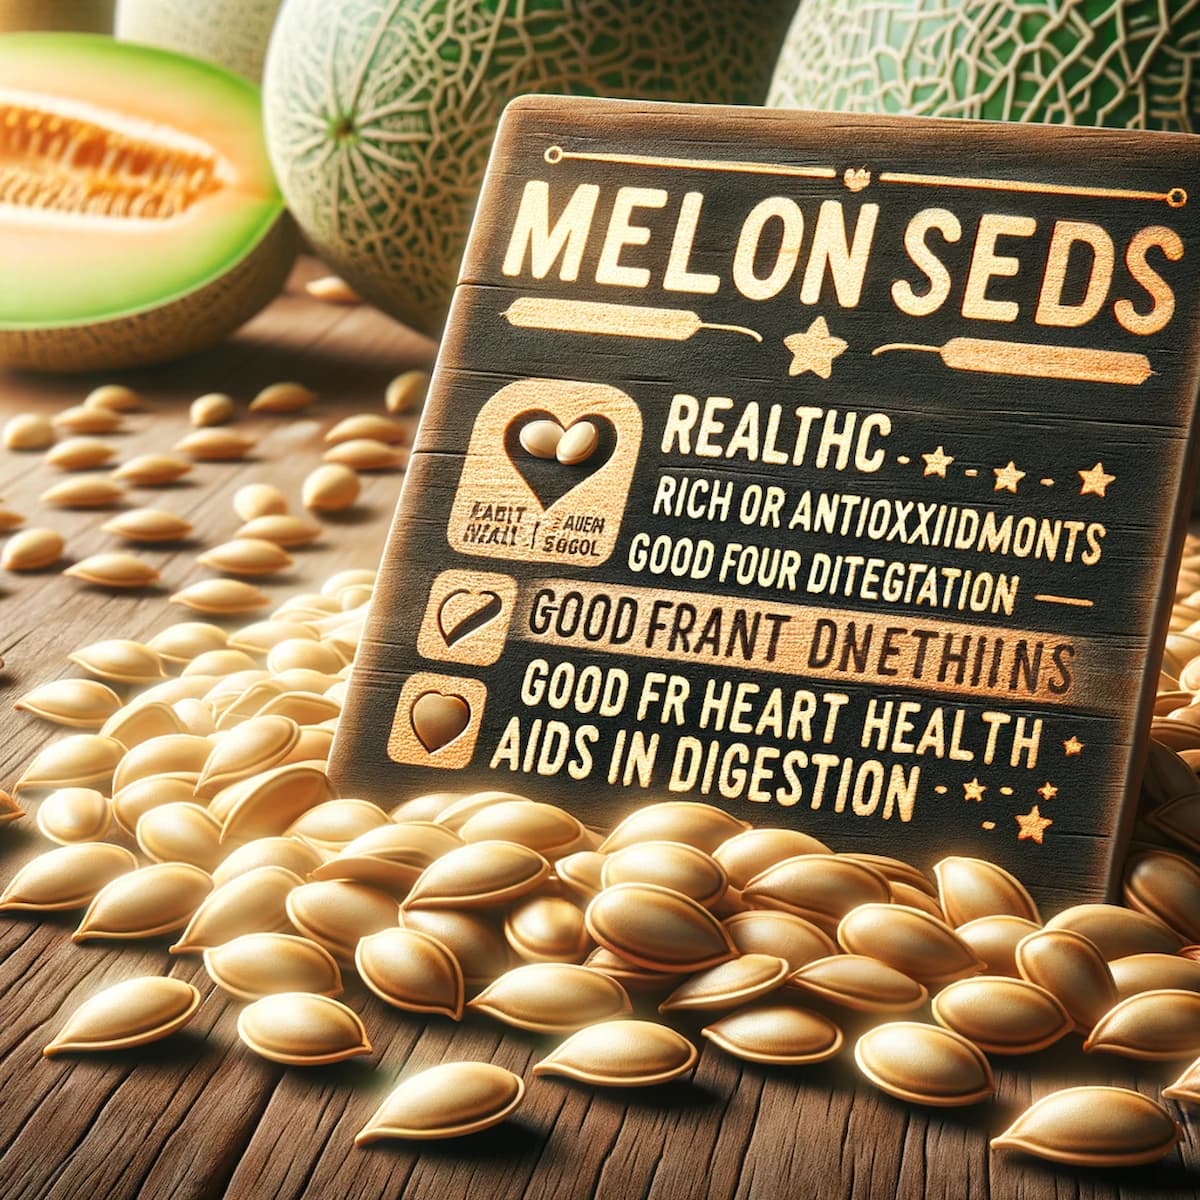 Benefícios da semente de melão